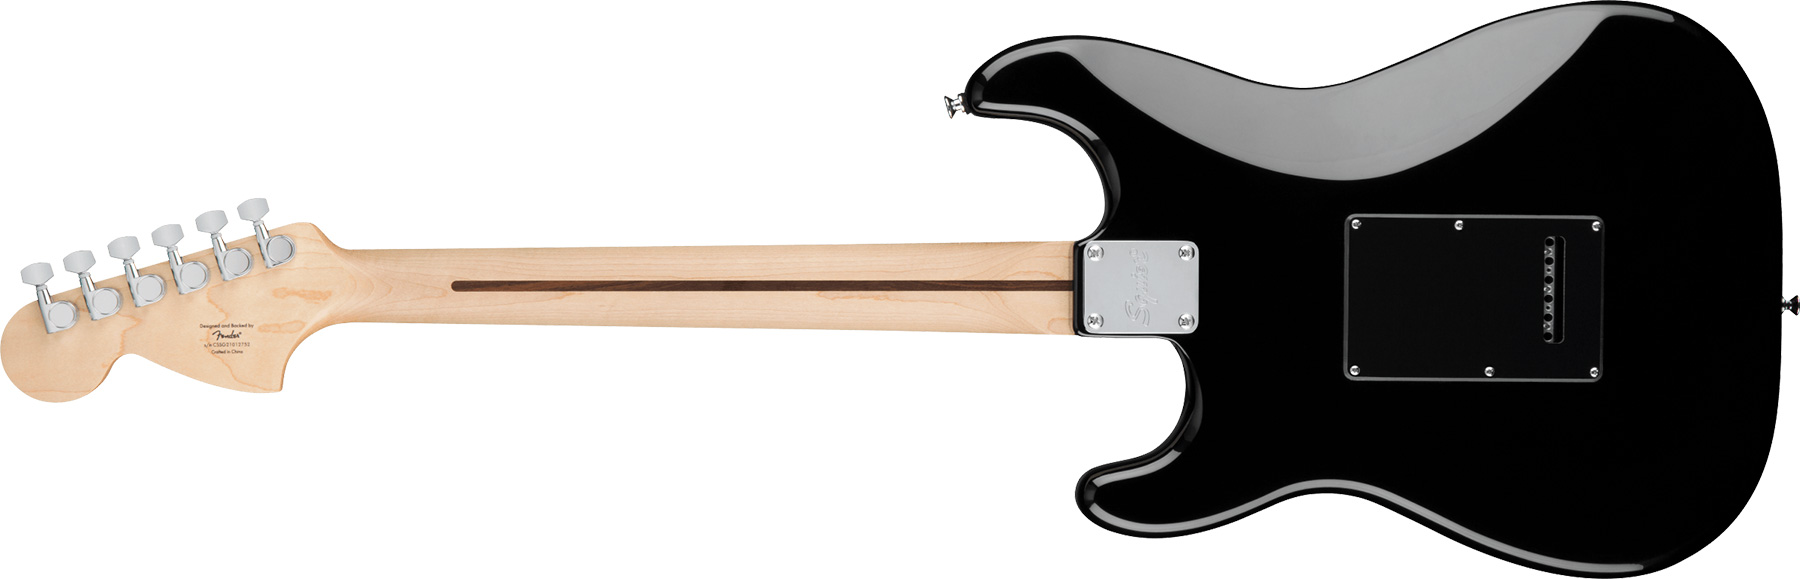 Squier Strat Affinity Black Pickguard Fsr Ltd Hss Trem Lau - Black - Elektrische gitaar in Str-vorm - Variation 1